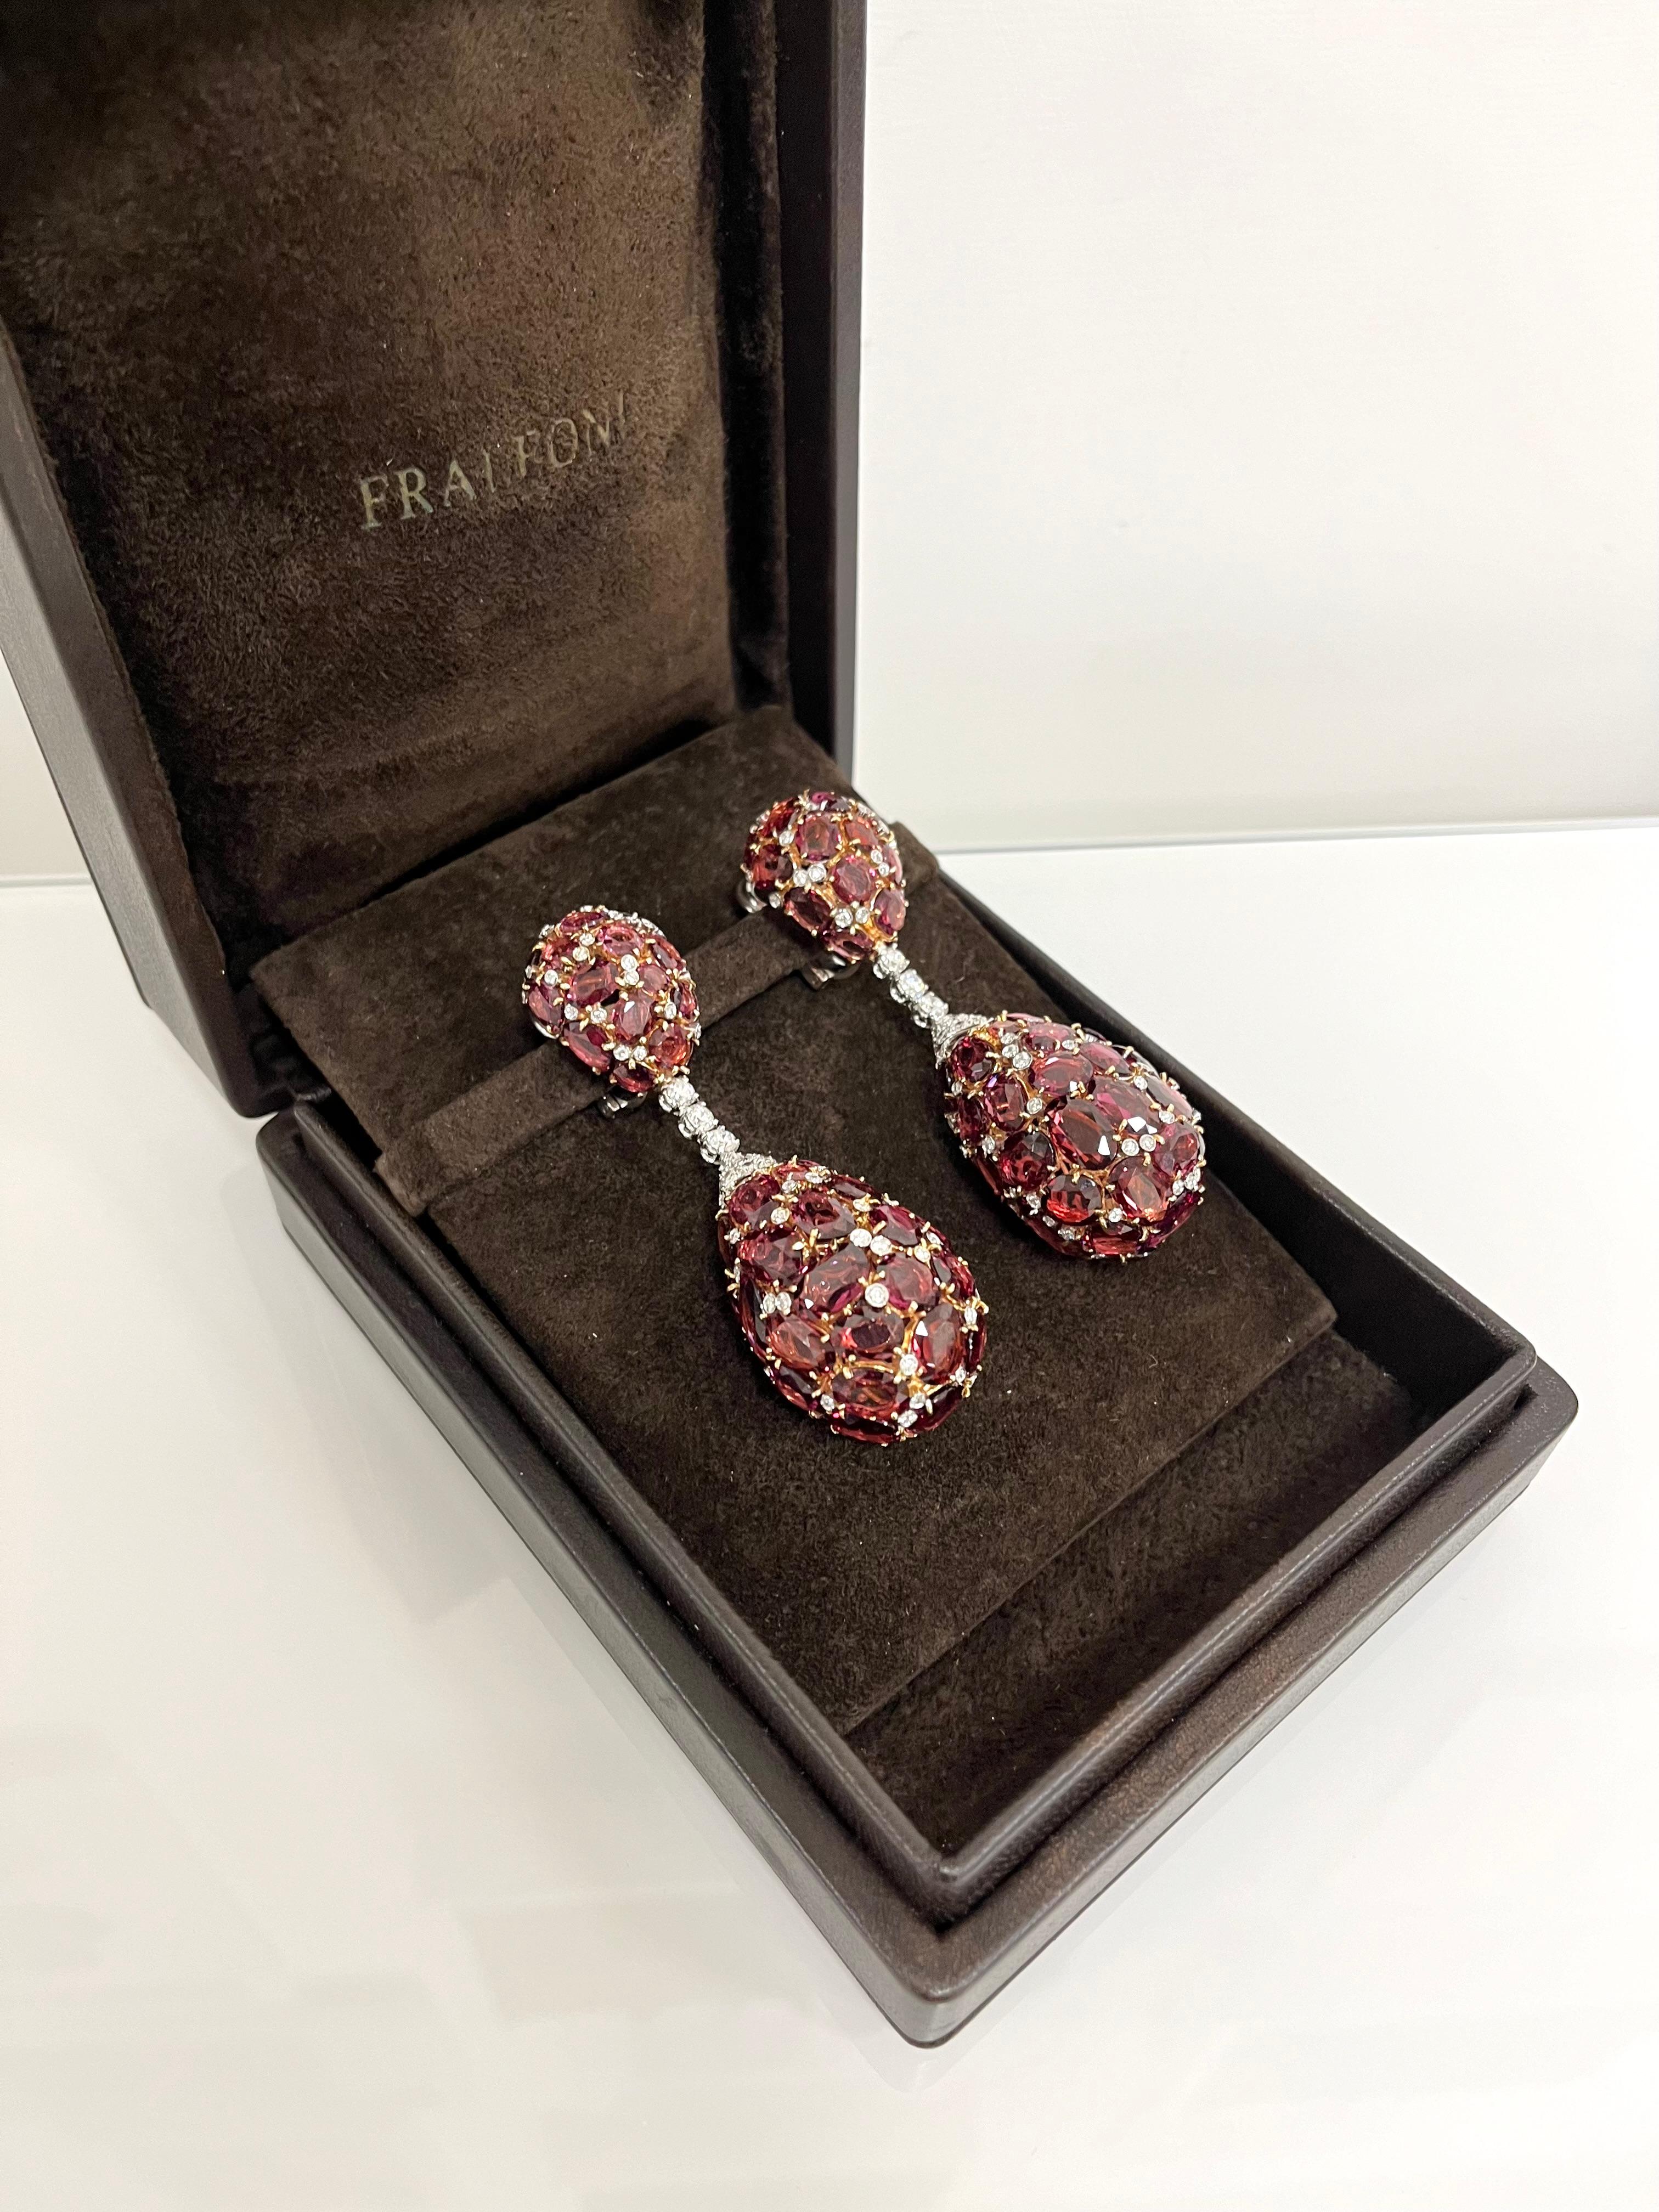 Fraleoni 18 Kt. White and Rose Gold Diamond Rodolite Pendant Earrings For Sale 3